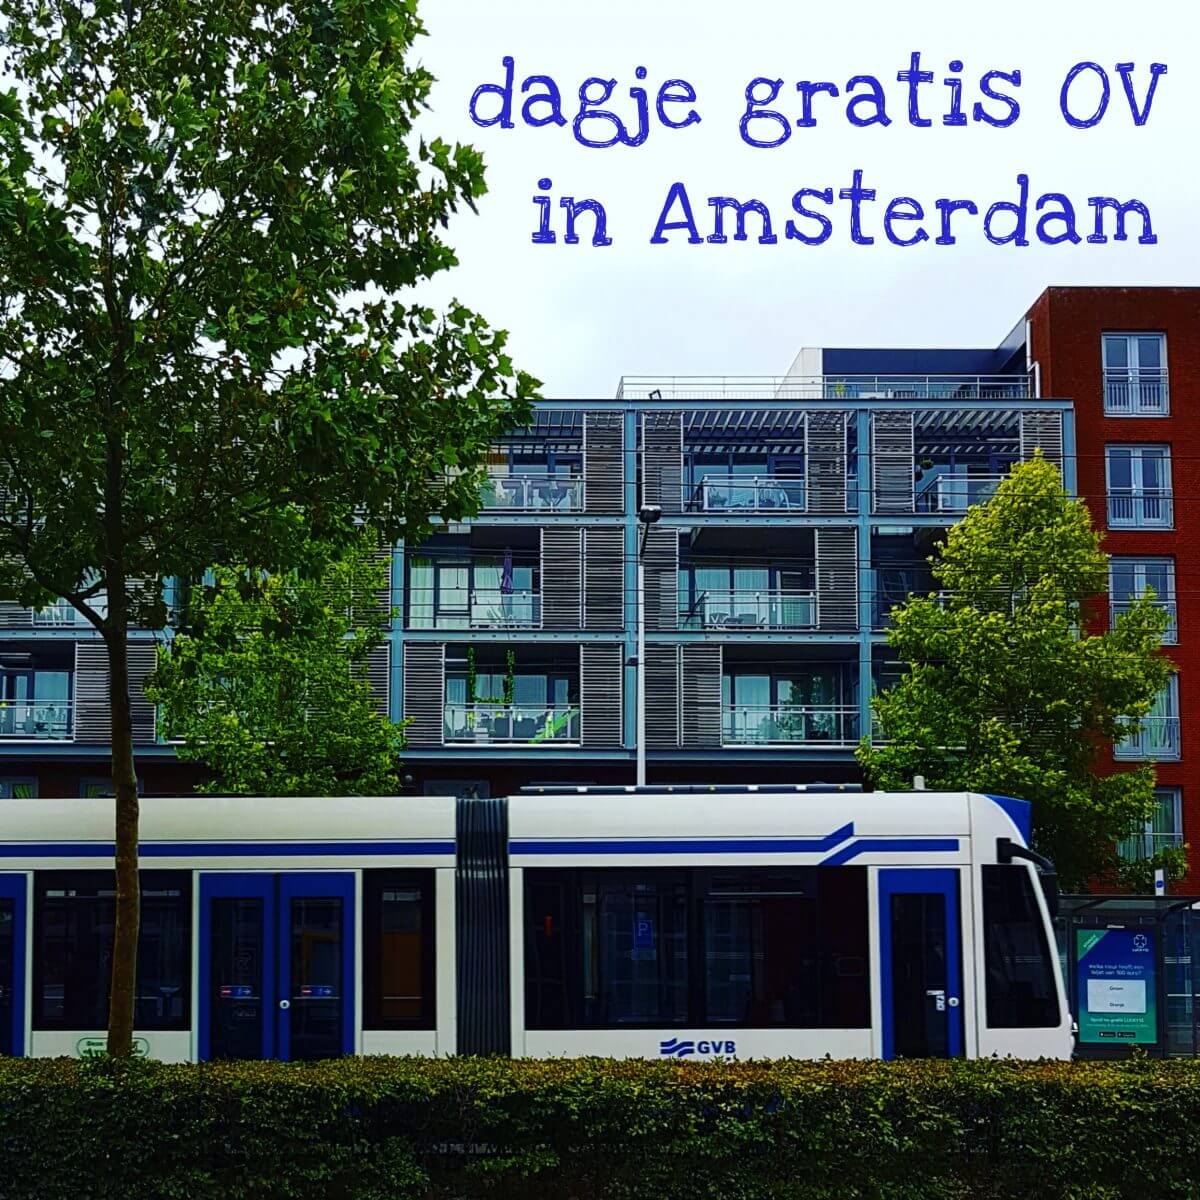 Dagje gratis met het openbaar vervoer in Amsterdam in de zomervakantie